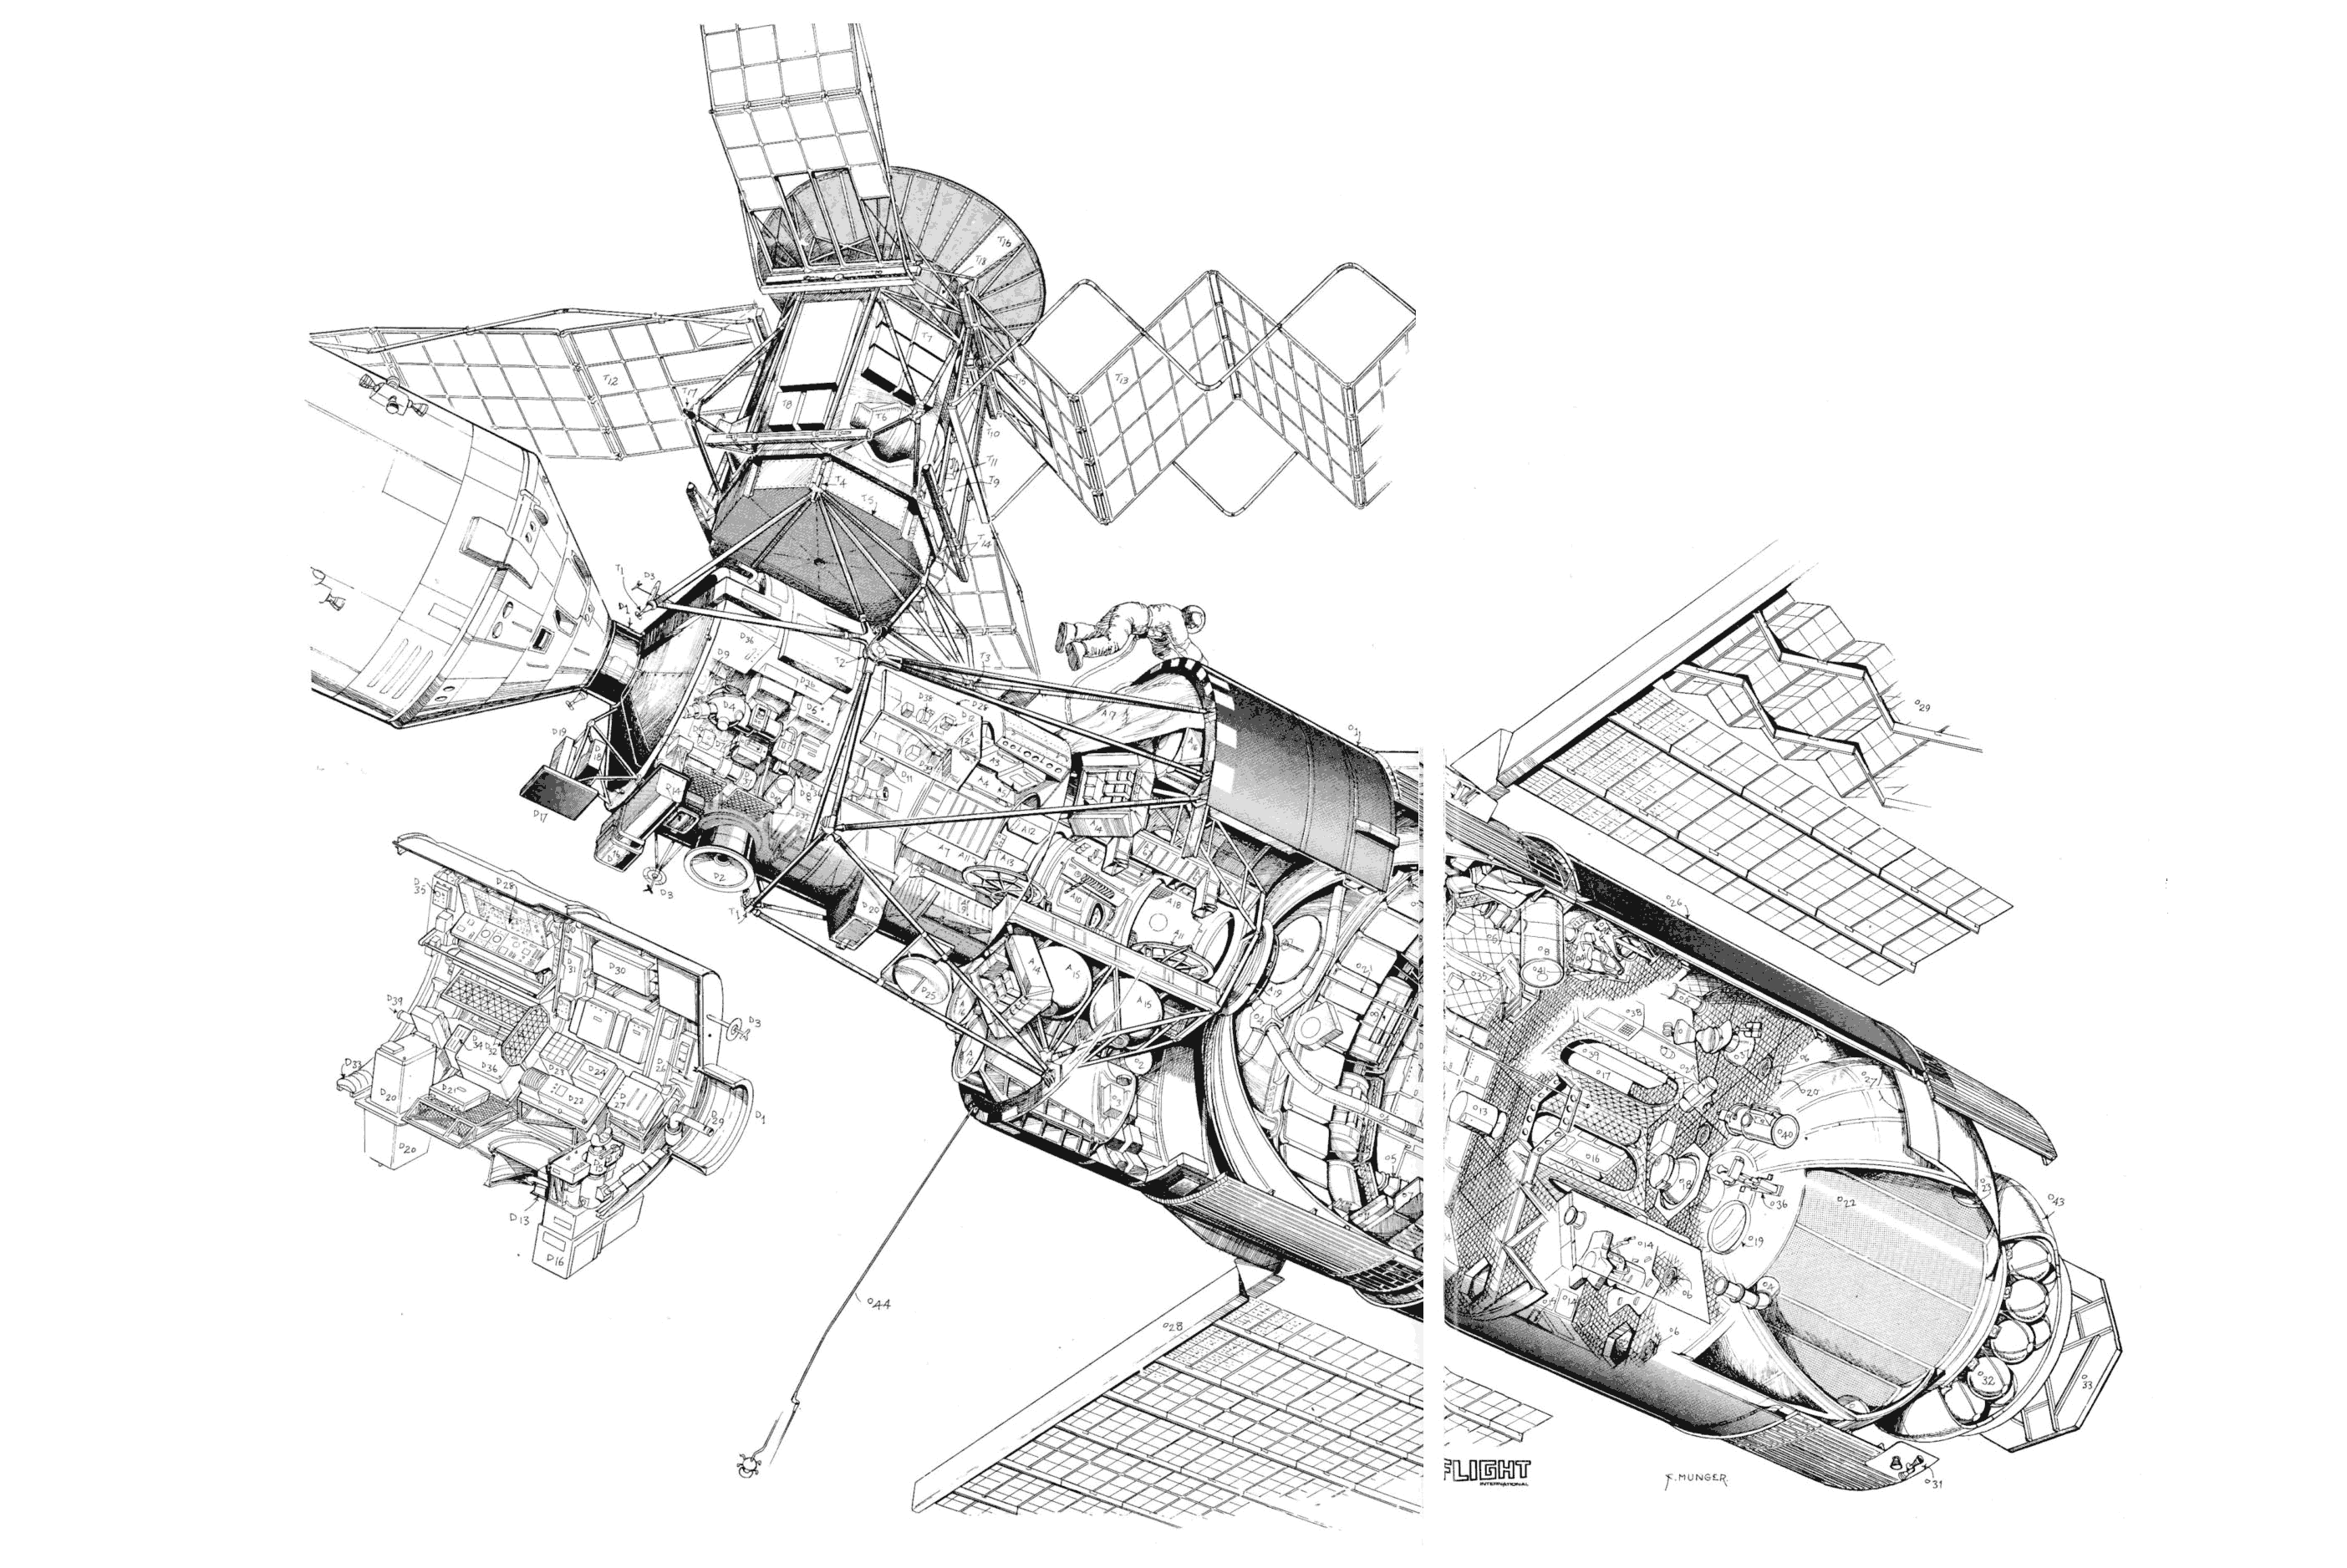 Skylab cutaway drawing